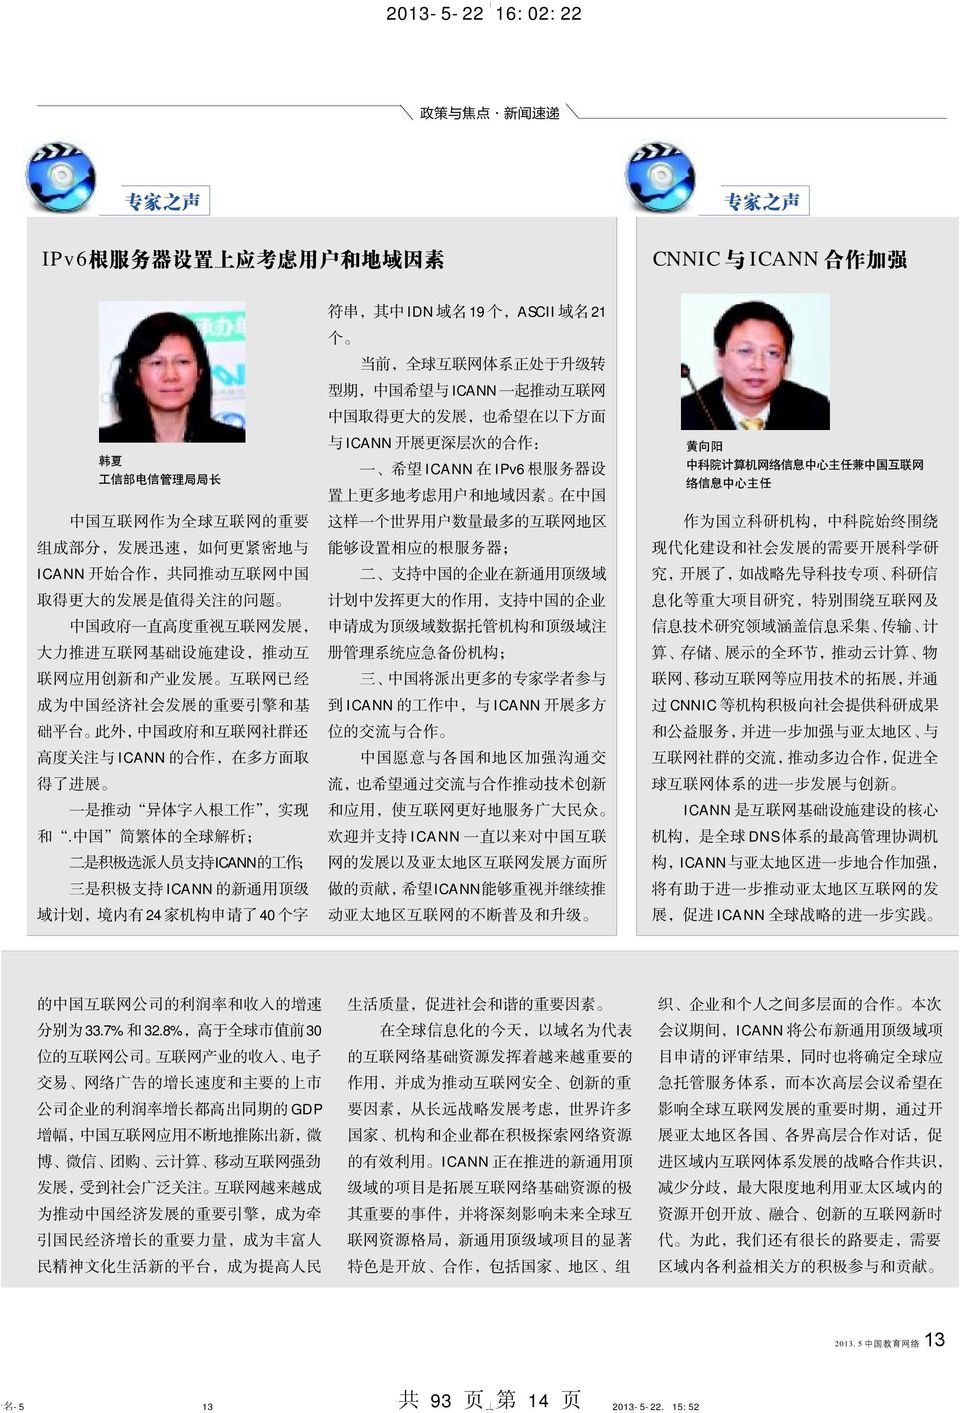 此 外, 中 国 政 府 和 互 联 网 社 群 还 高 度 关 注 与 ICANN 的 合 作, 在 多 方 面 取 得 了 进 展 一 是 推 动 异 体 字 入 根 工 作, 实 现 和.